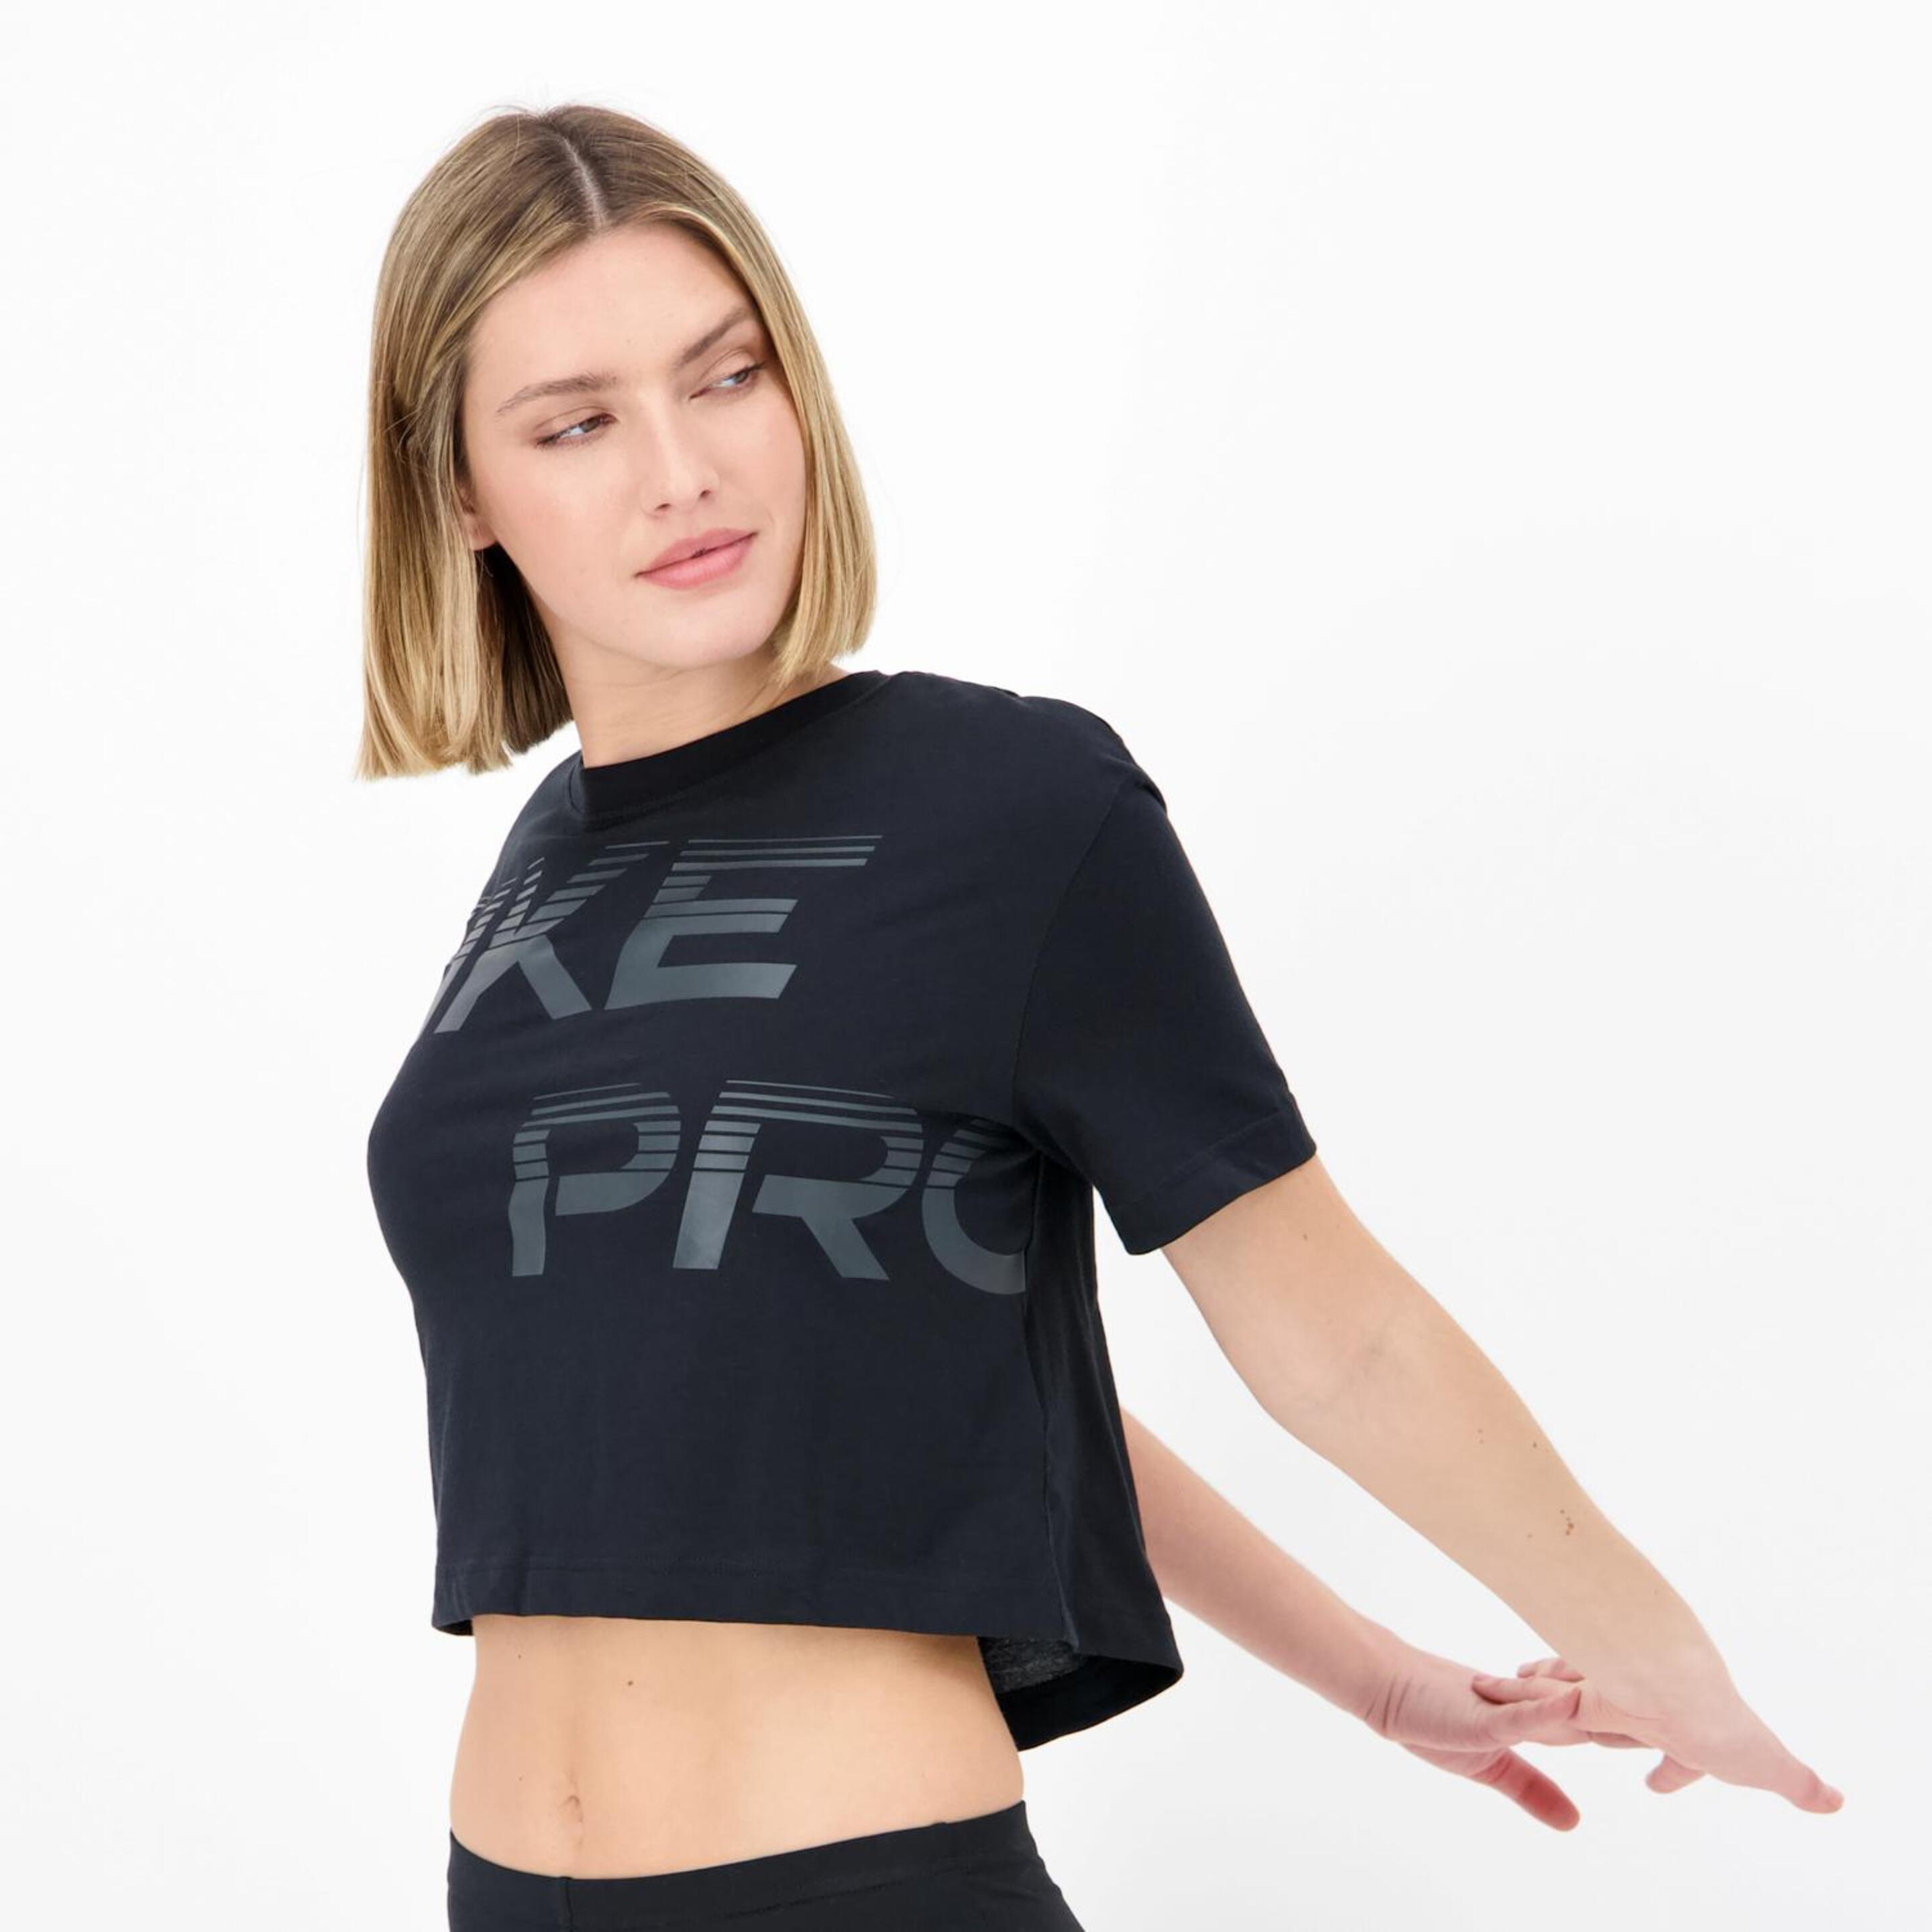 Camiseta Nike - Negro - Camiseta Boxy Mujer